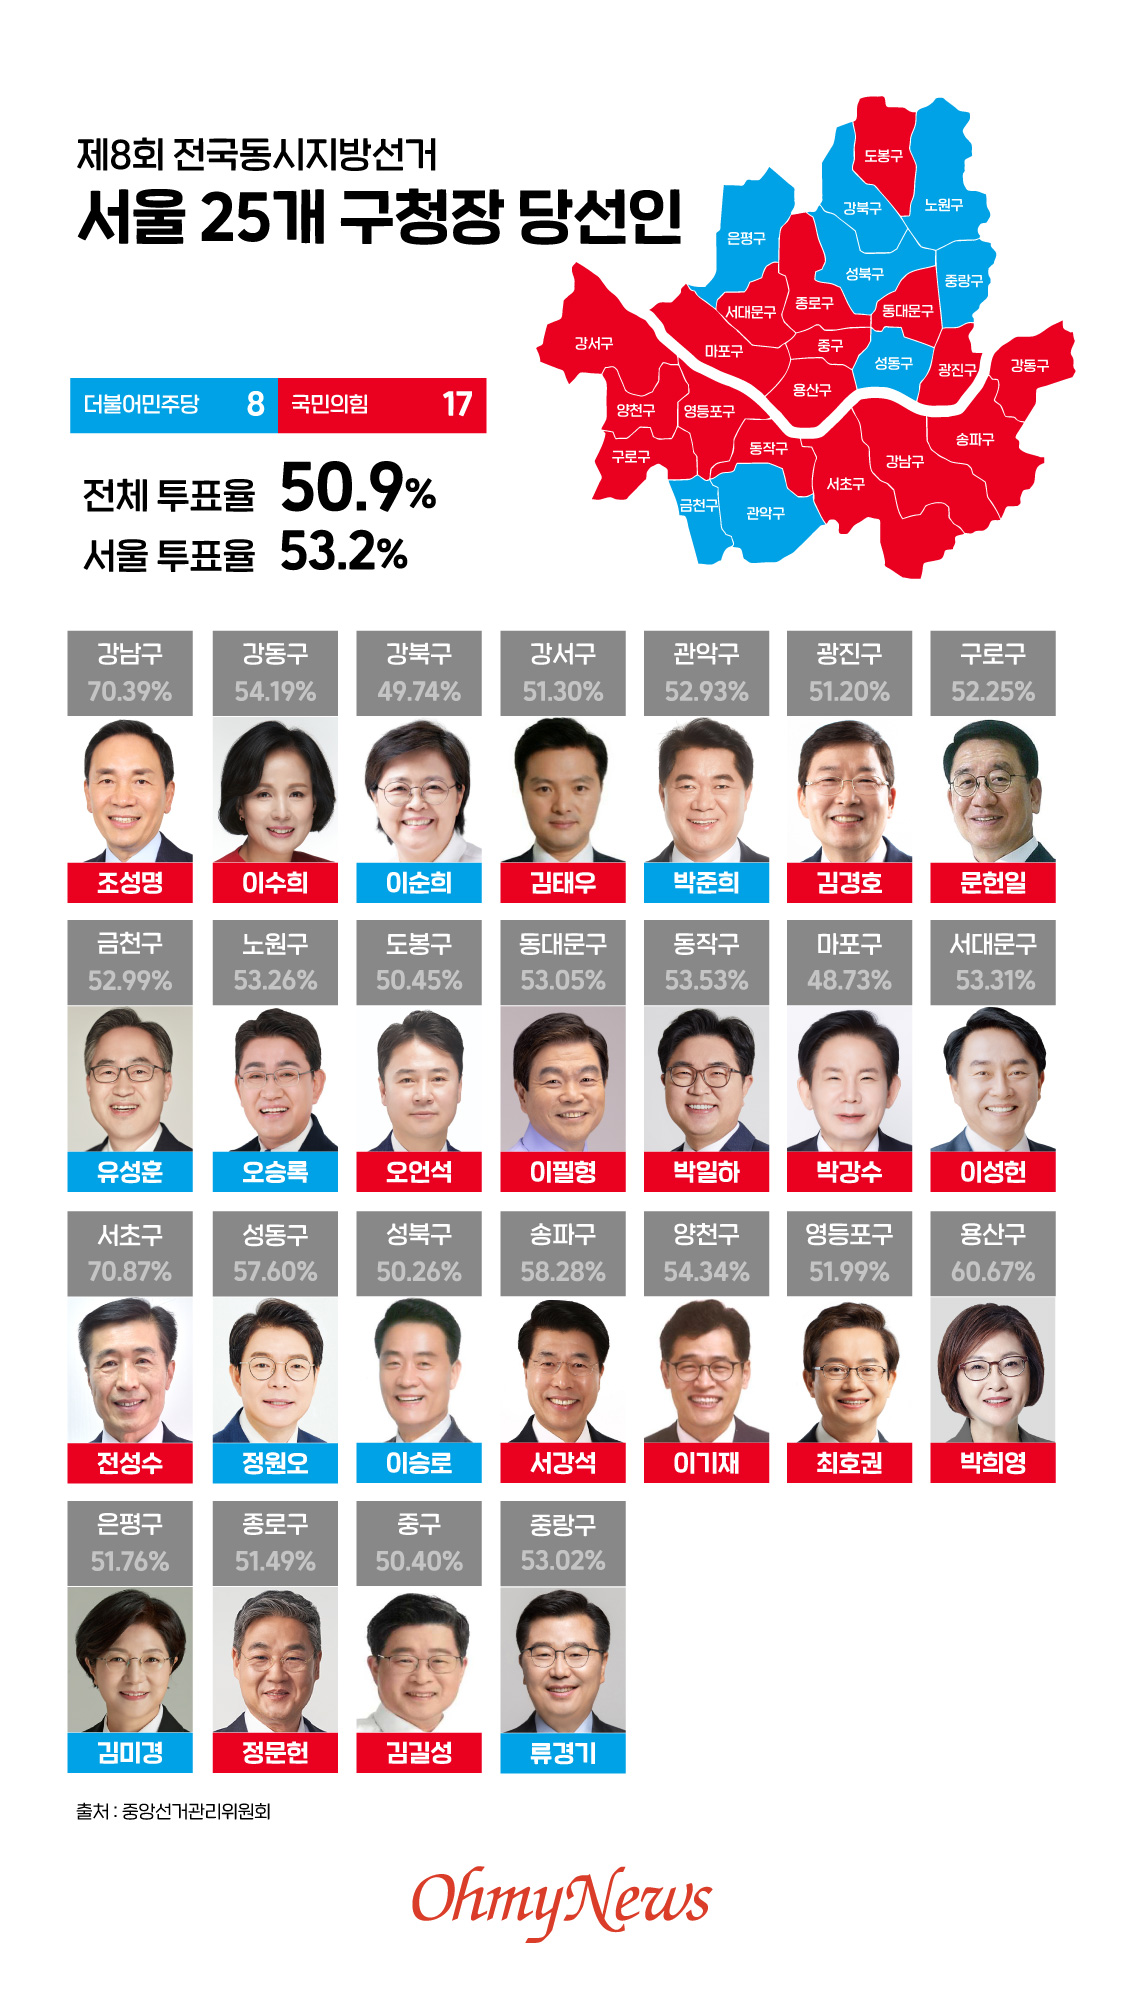  제8회 전국동시지방선거 - 서울 25개 구청장 당선인 